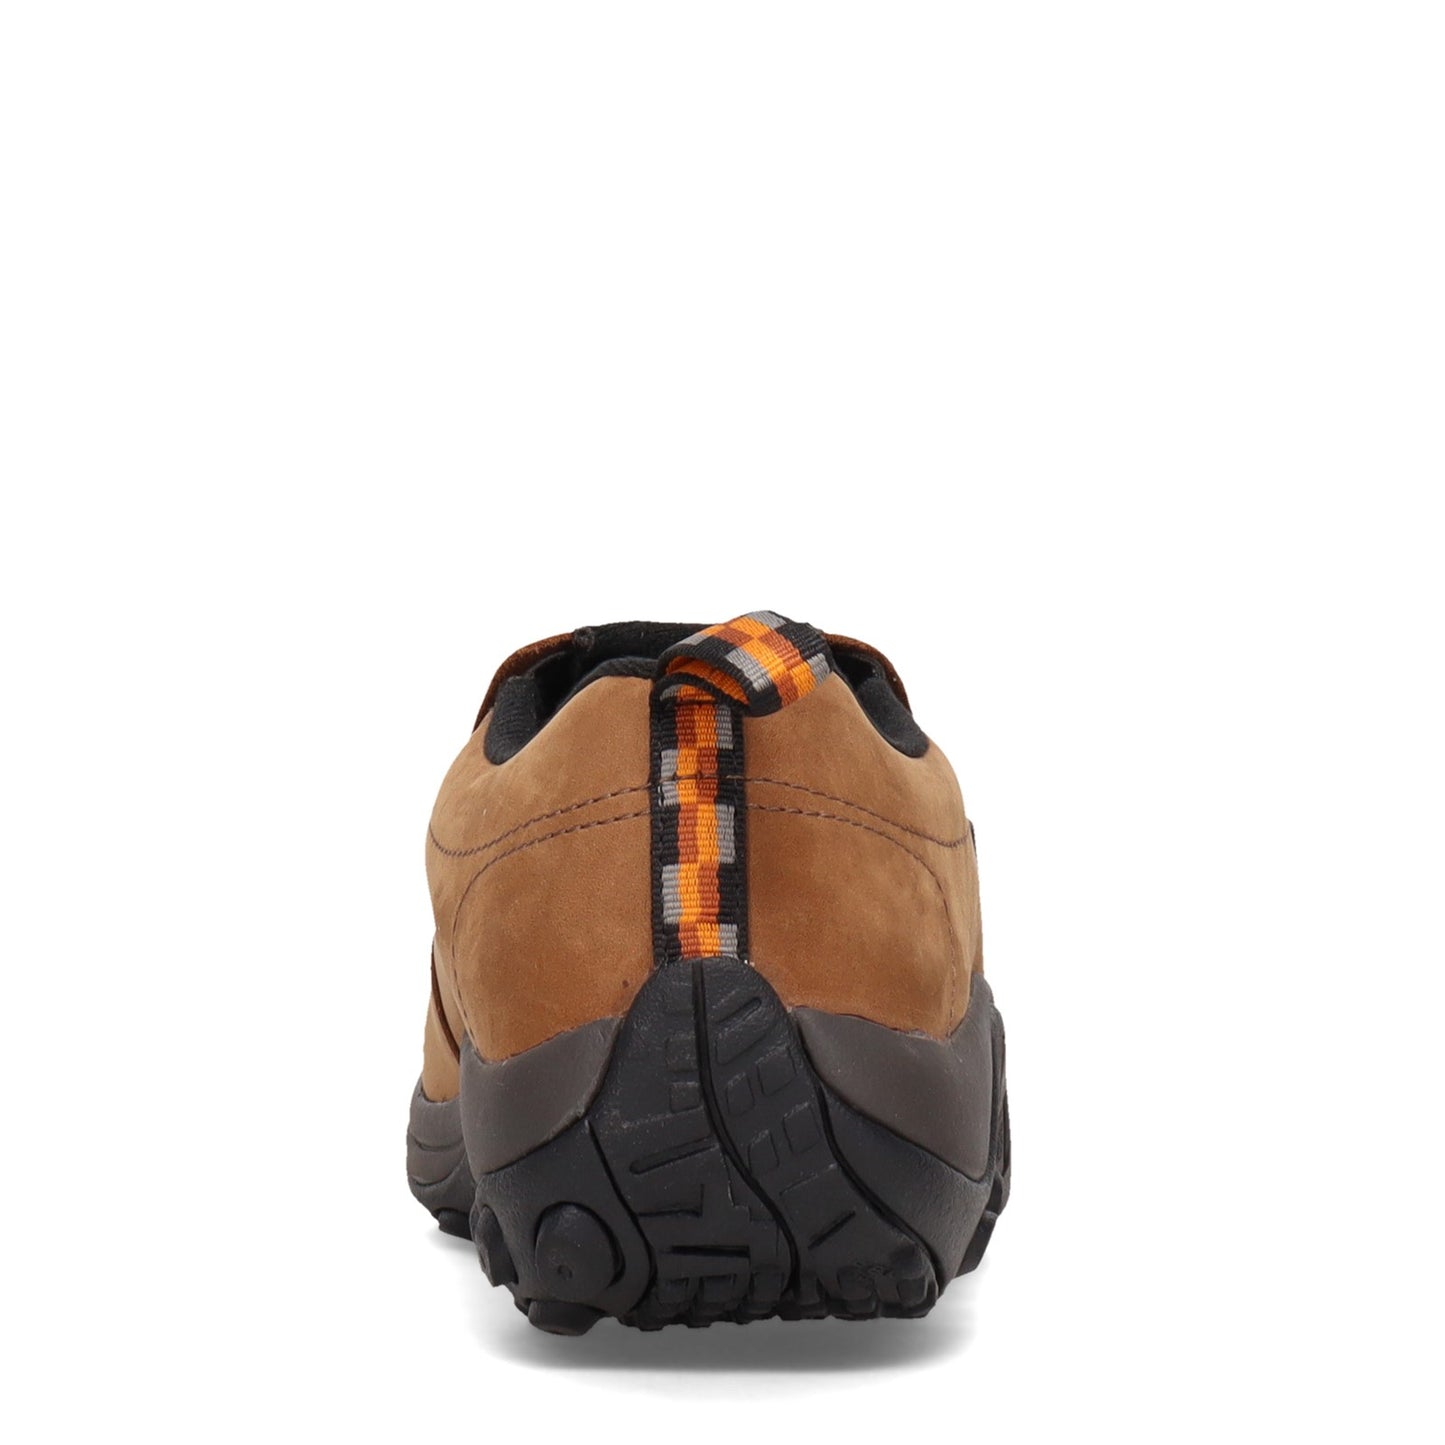 Peltz Shoes  Men's Merrell Jungle Moc Waterproof Slip-On - Wide Width BROWN NUBUCK J52927W